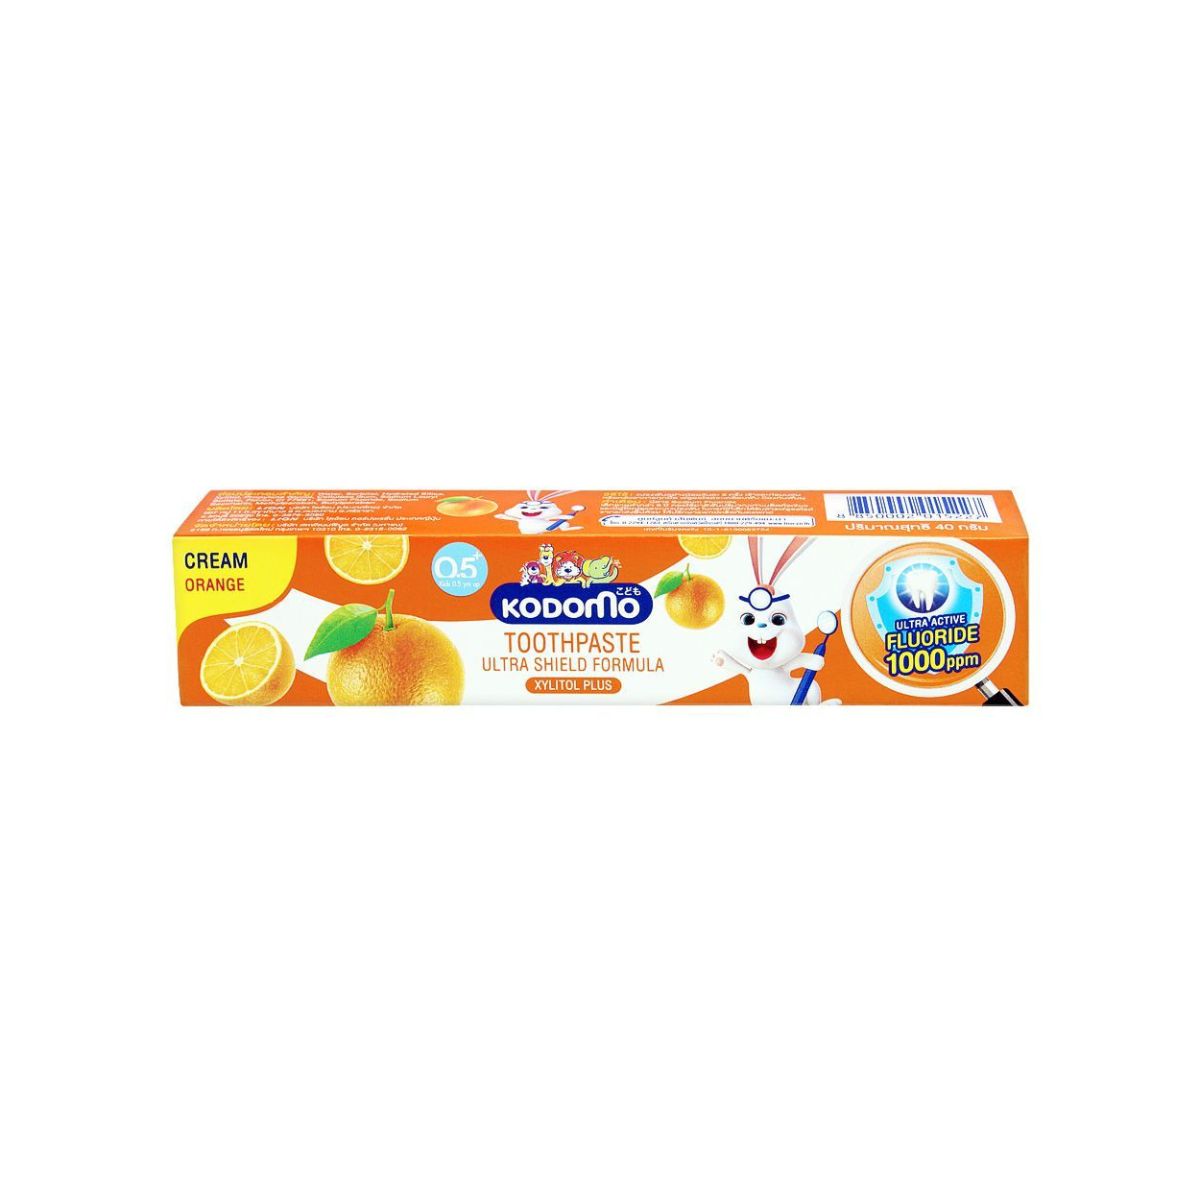 Kodomo Toothpaste Ultra Shield Formula - Xylitol Plus - Cream Orange